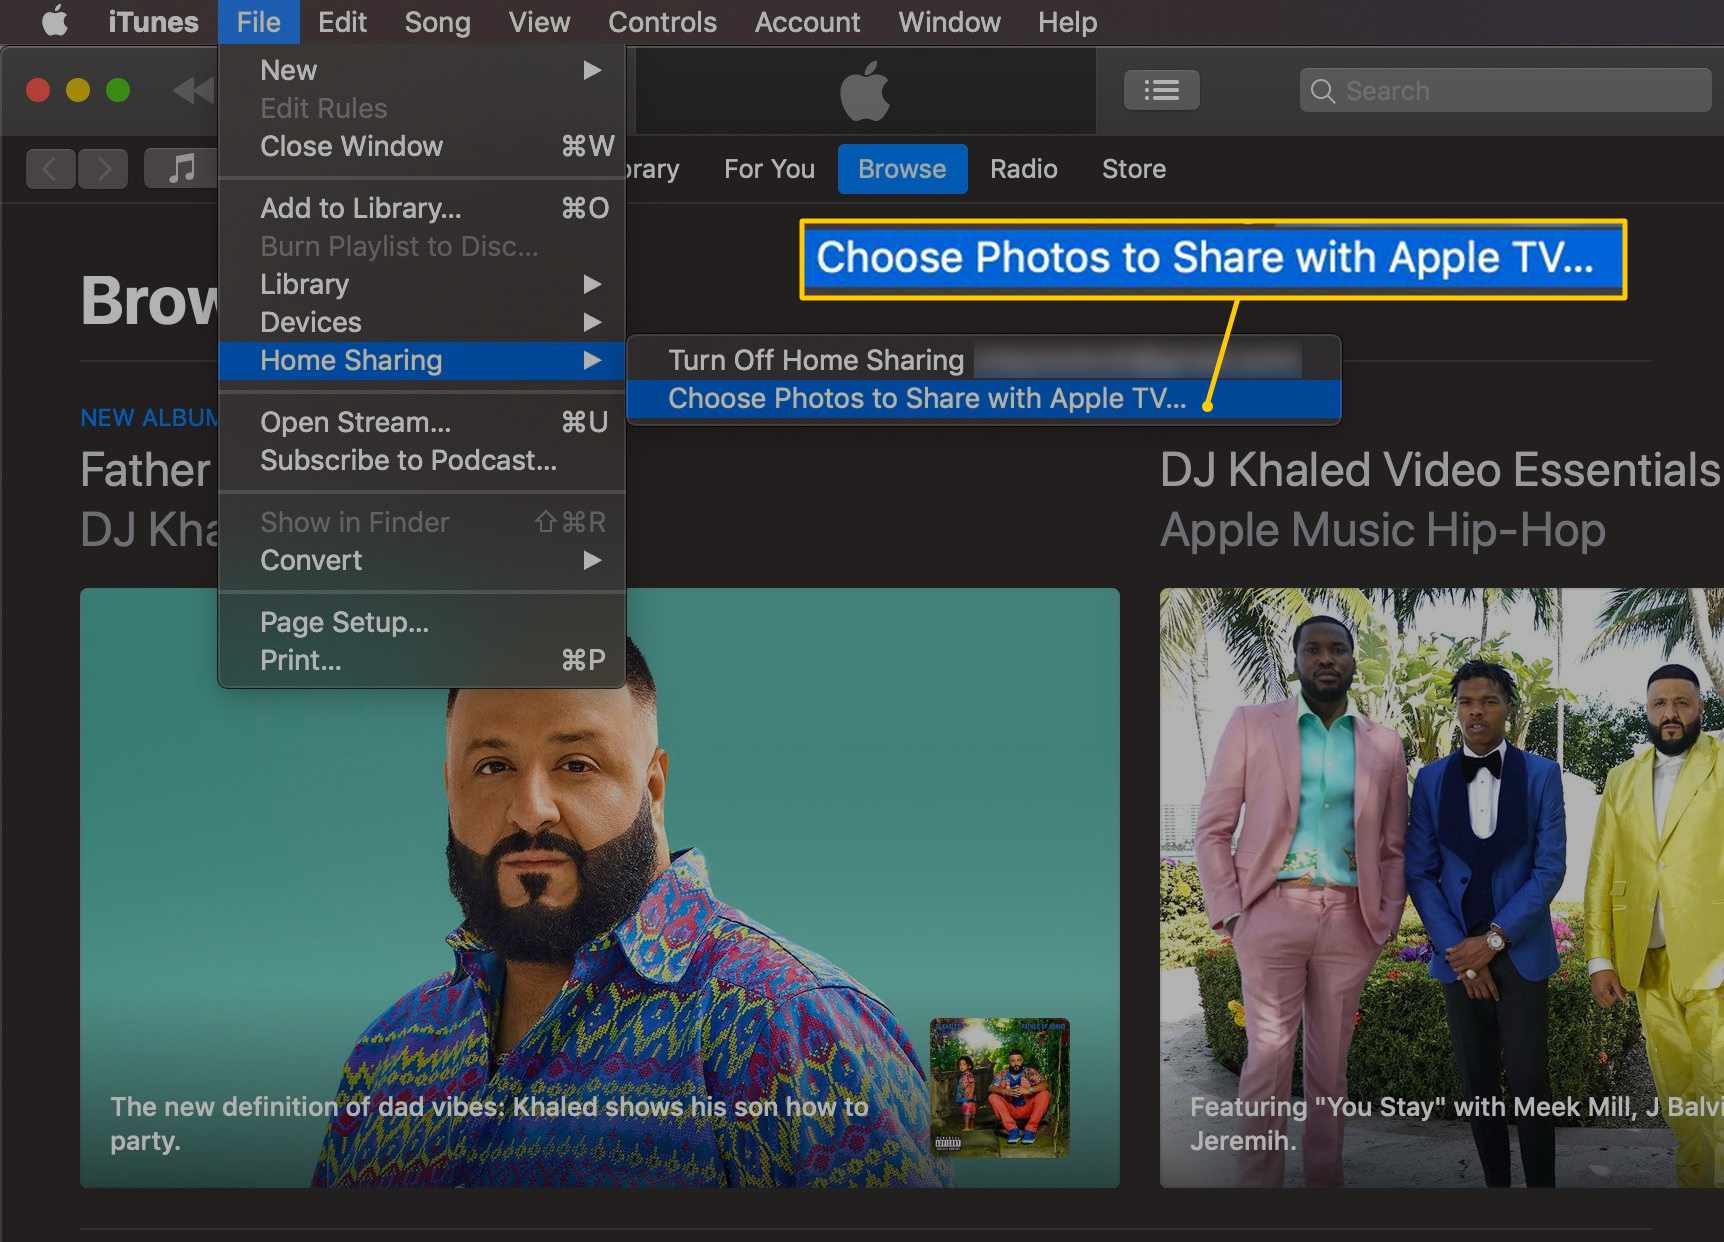 Escolha o item de menu Fotos para compartilhar com a Apple TV no iTunes